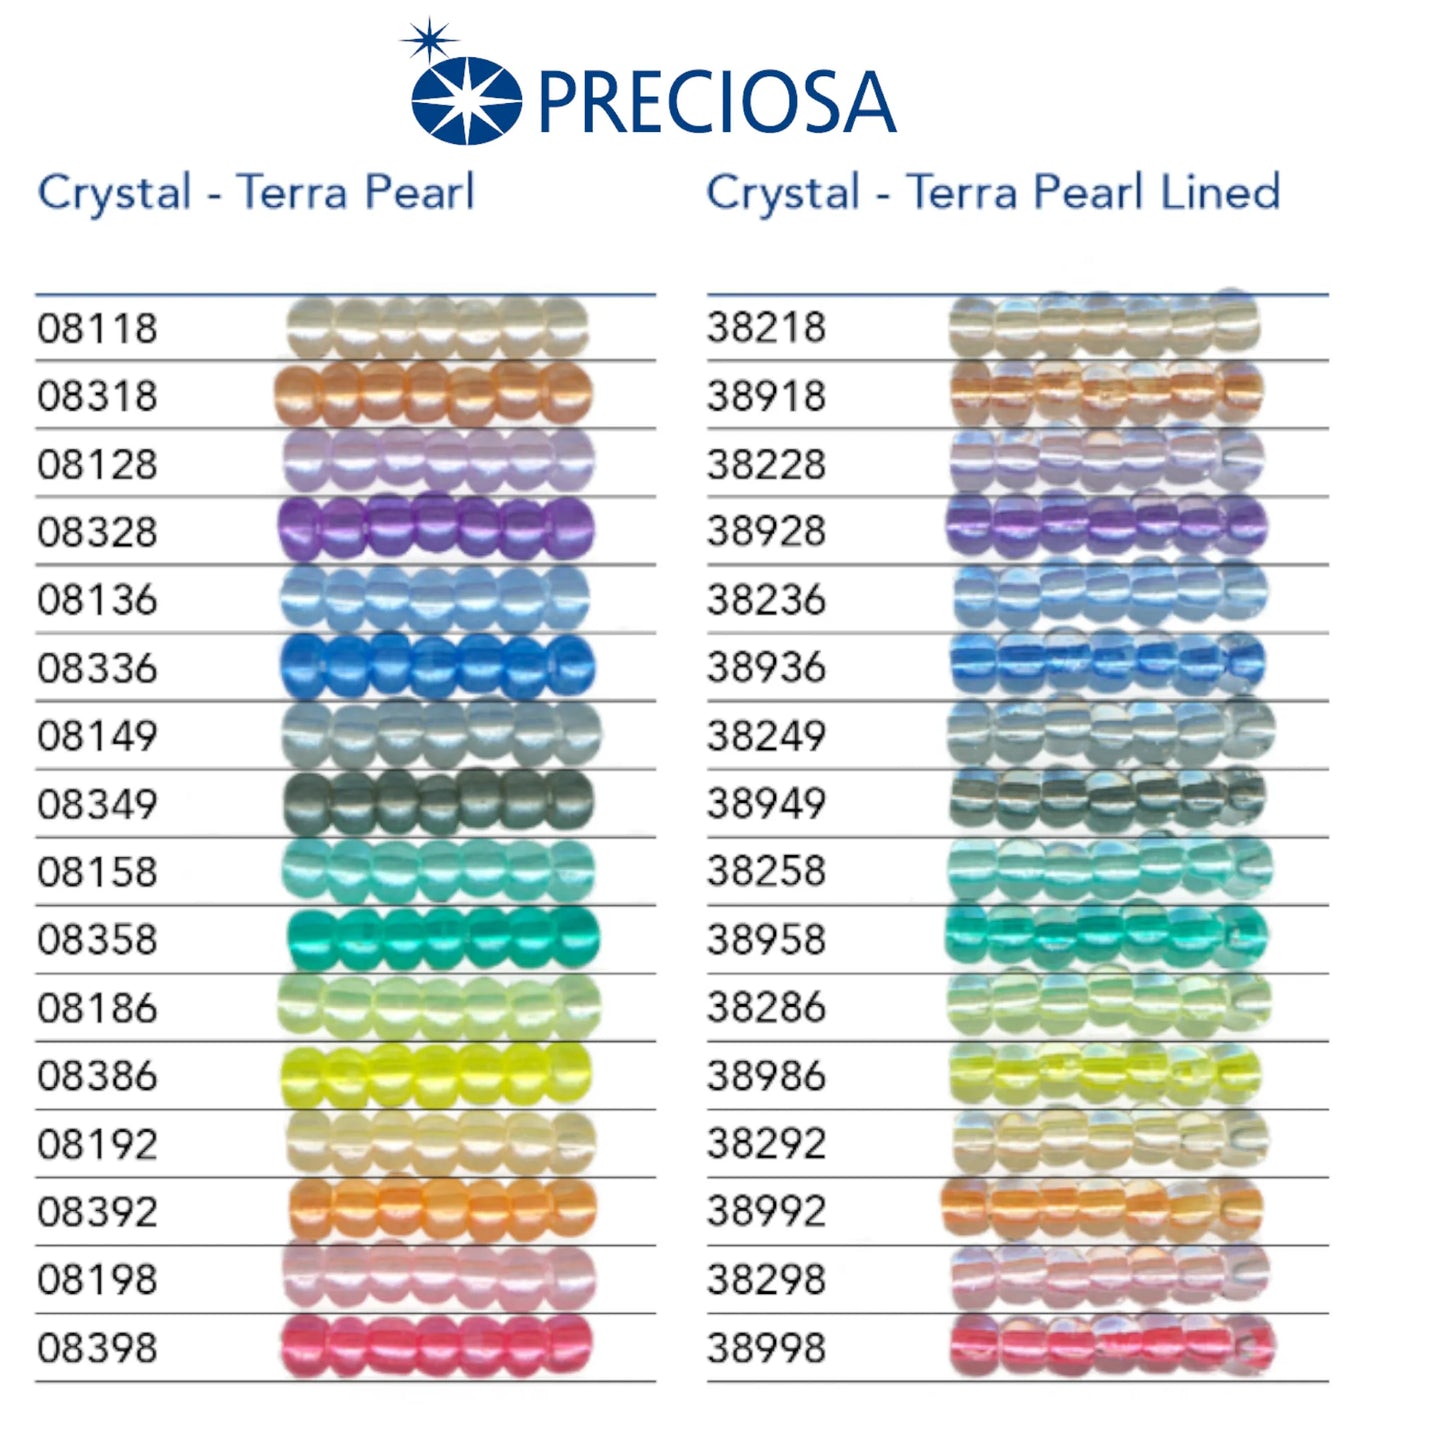 38249 Tschechische Rocailles PRECIOSA Rocailles 10/0 grau. Kristall – Terra Pearl gefüttert.